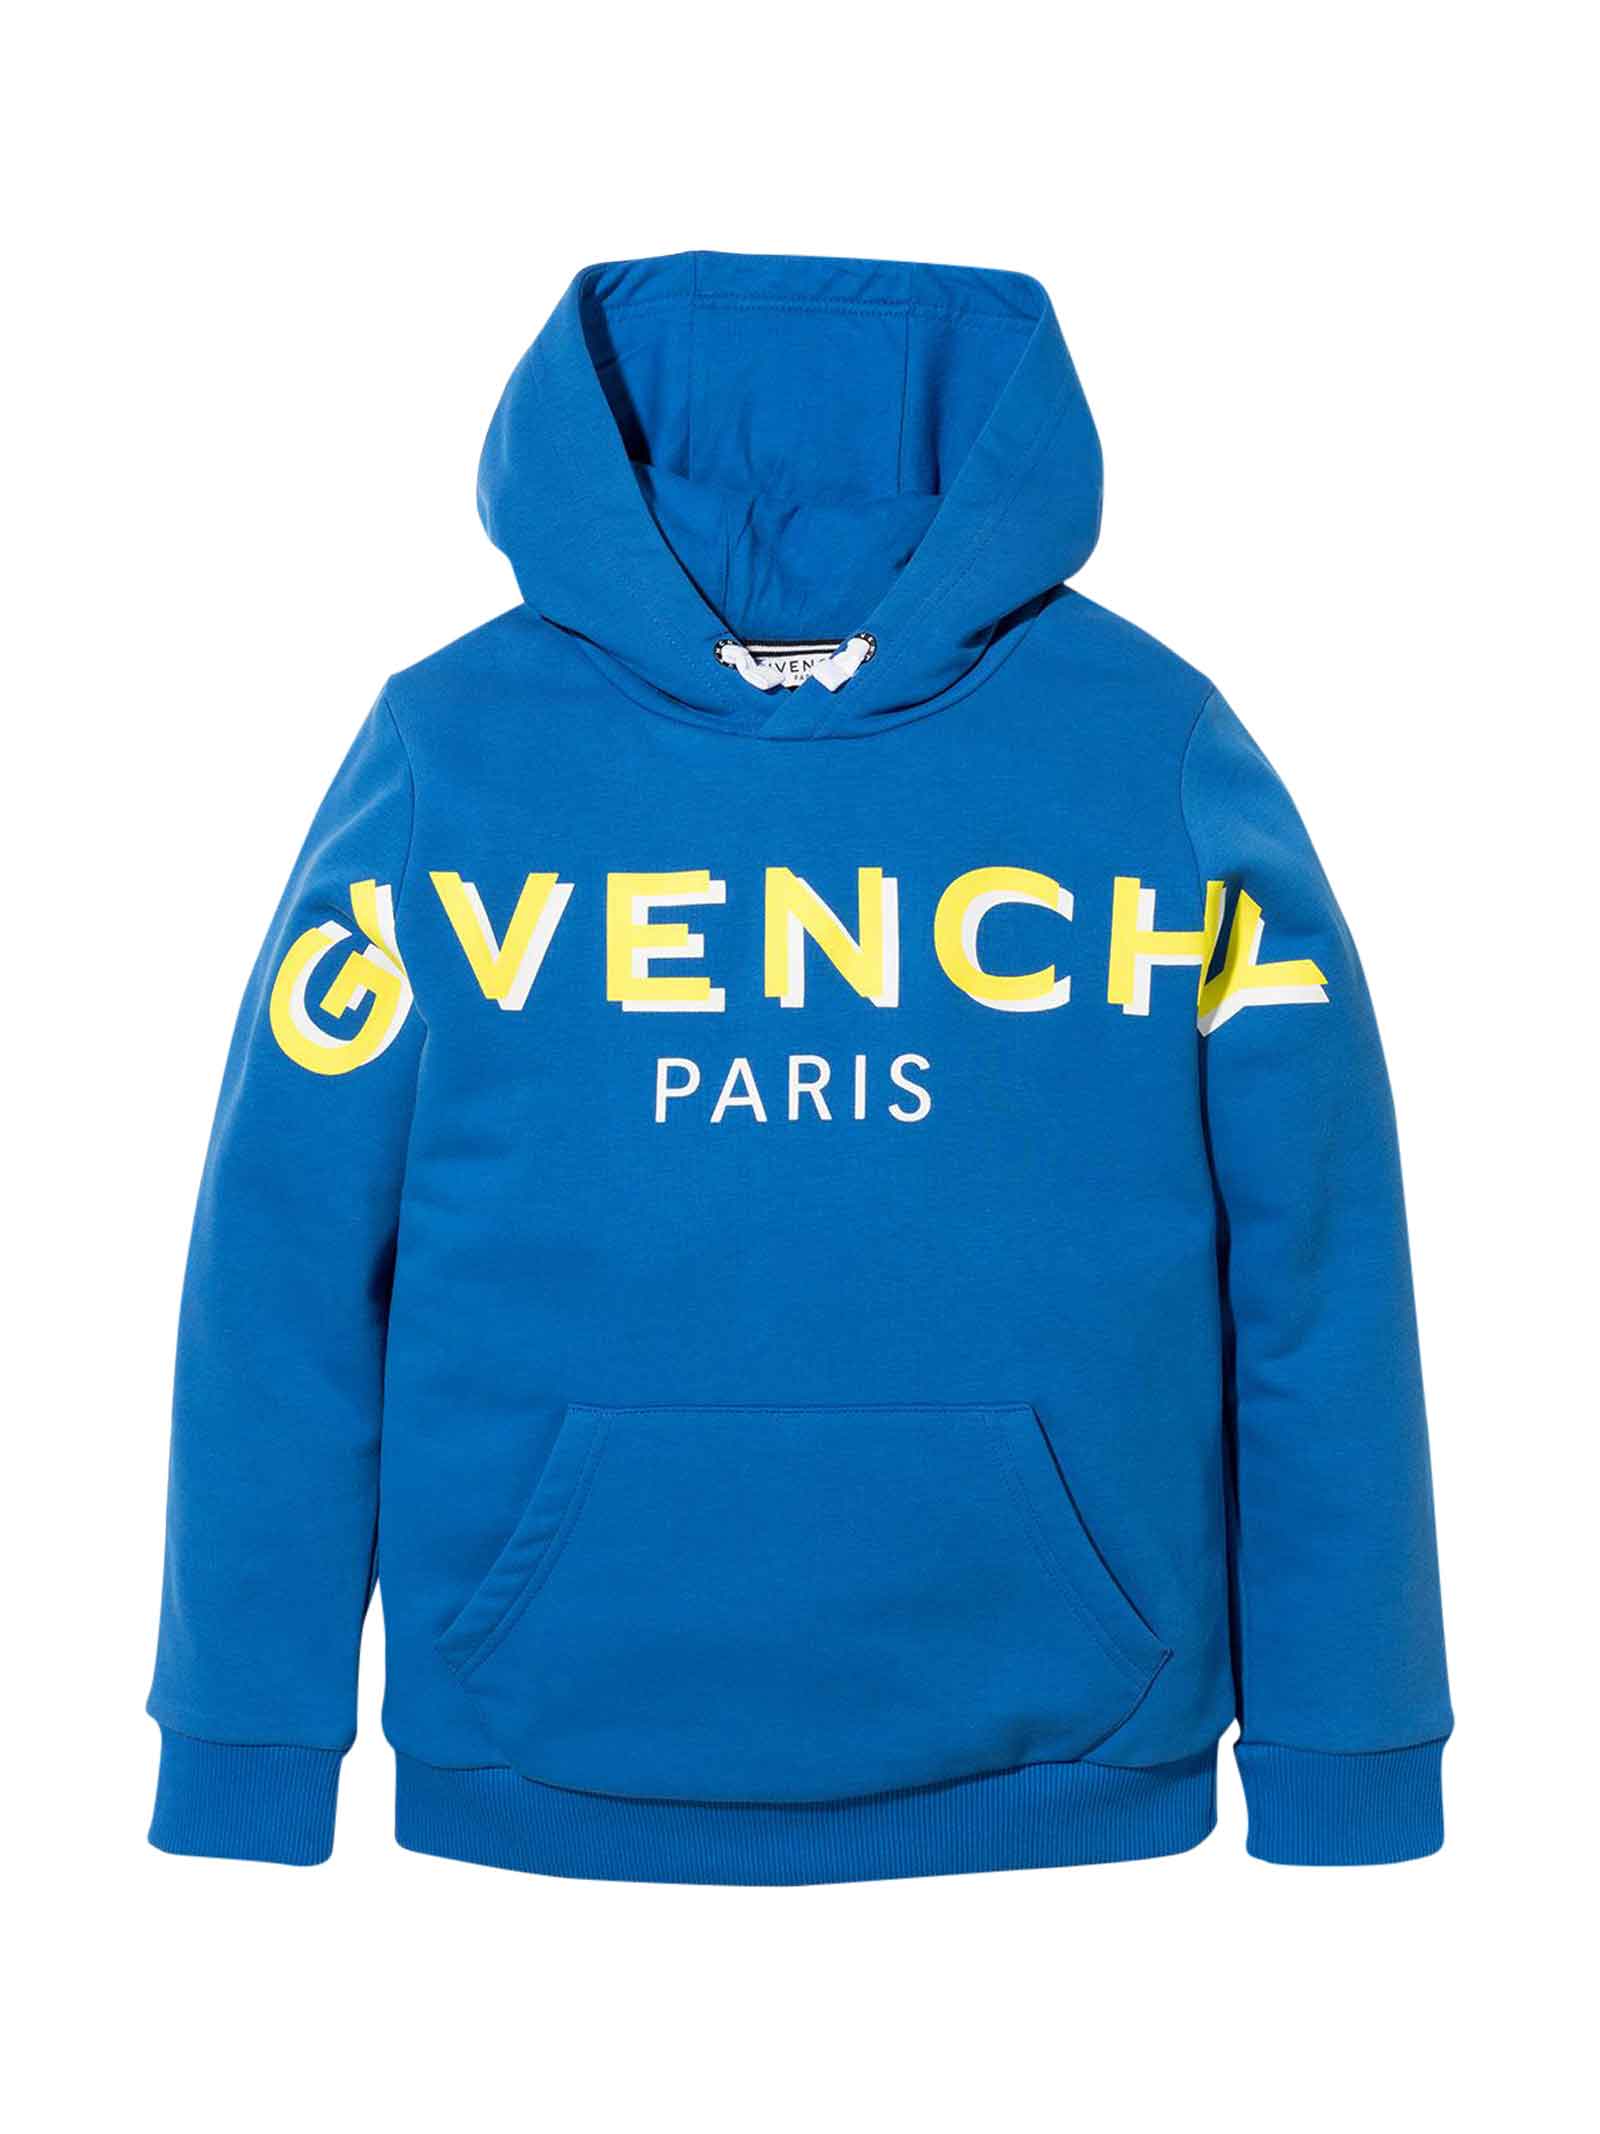 Givenchy Unisex Blue Sweatshirt